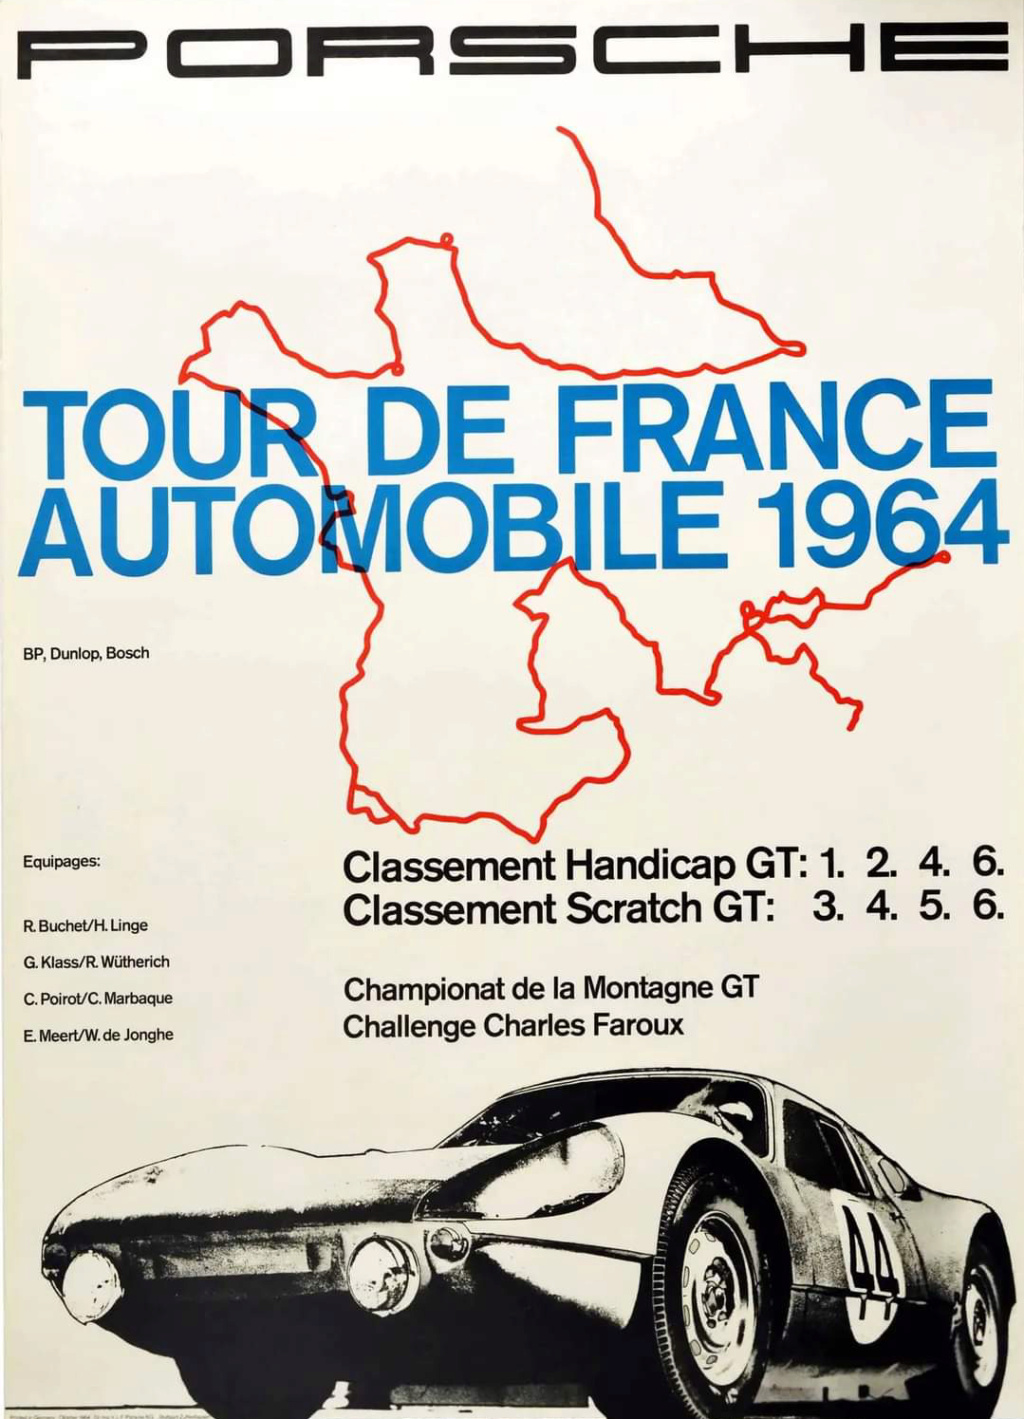 Affiches Porsche dans la course Automobile - Page 5 Scre1148